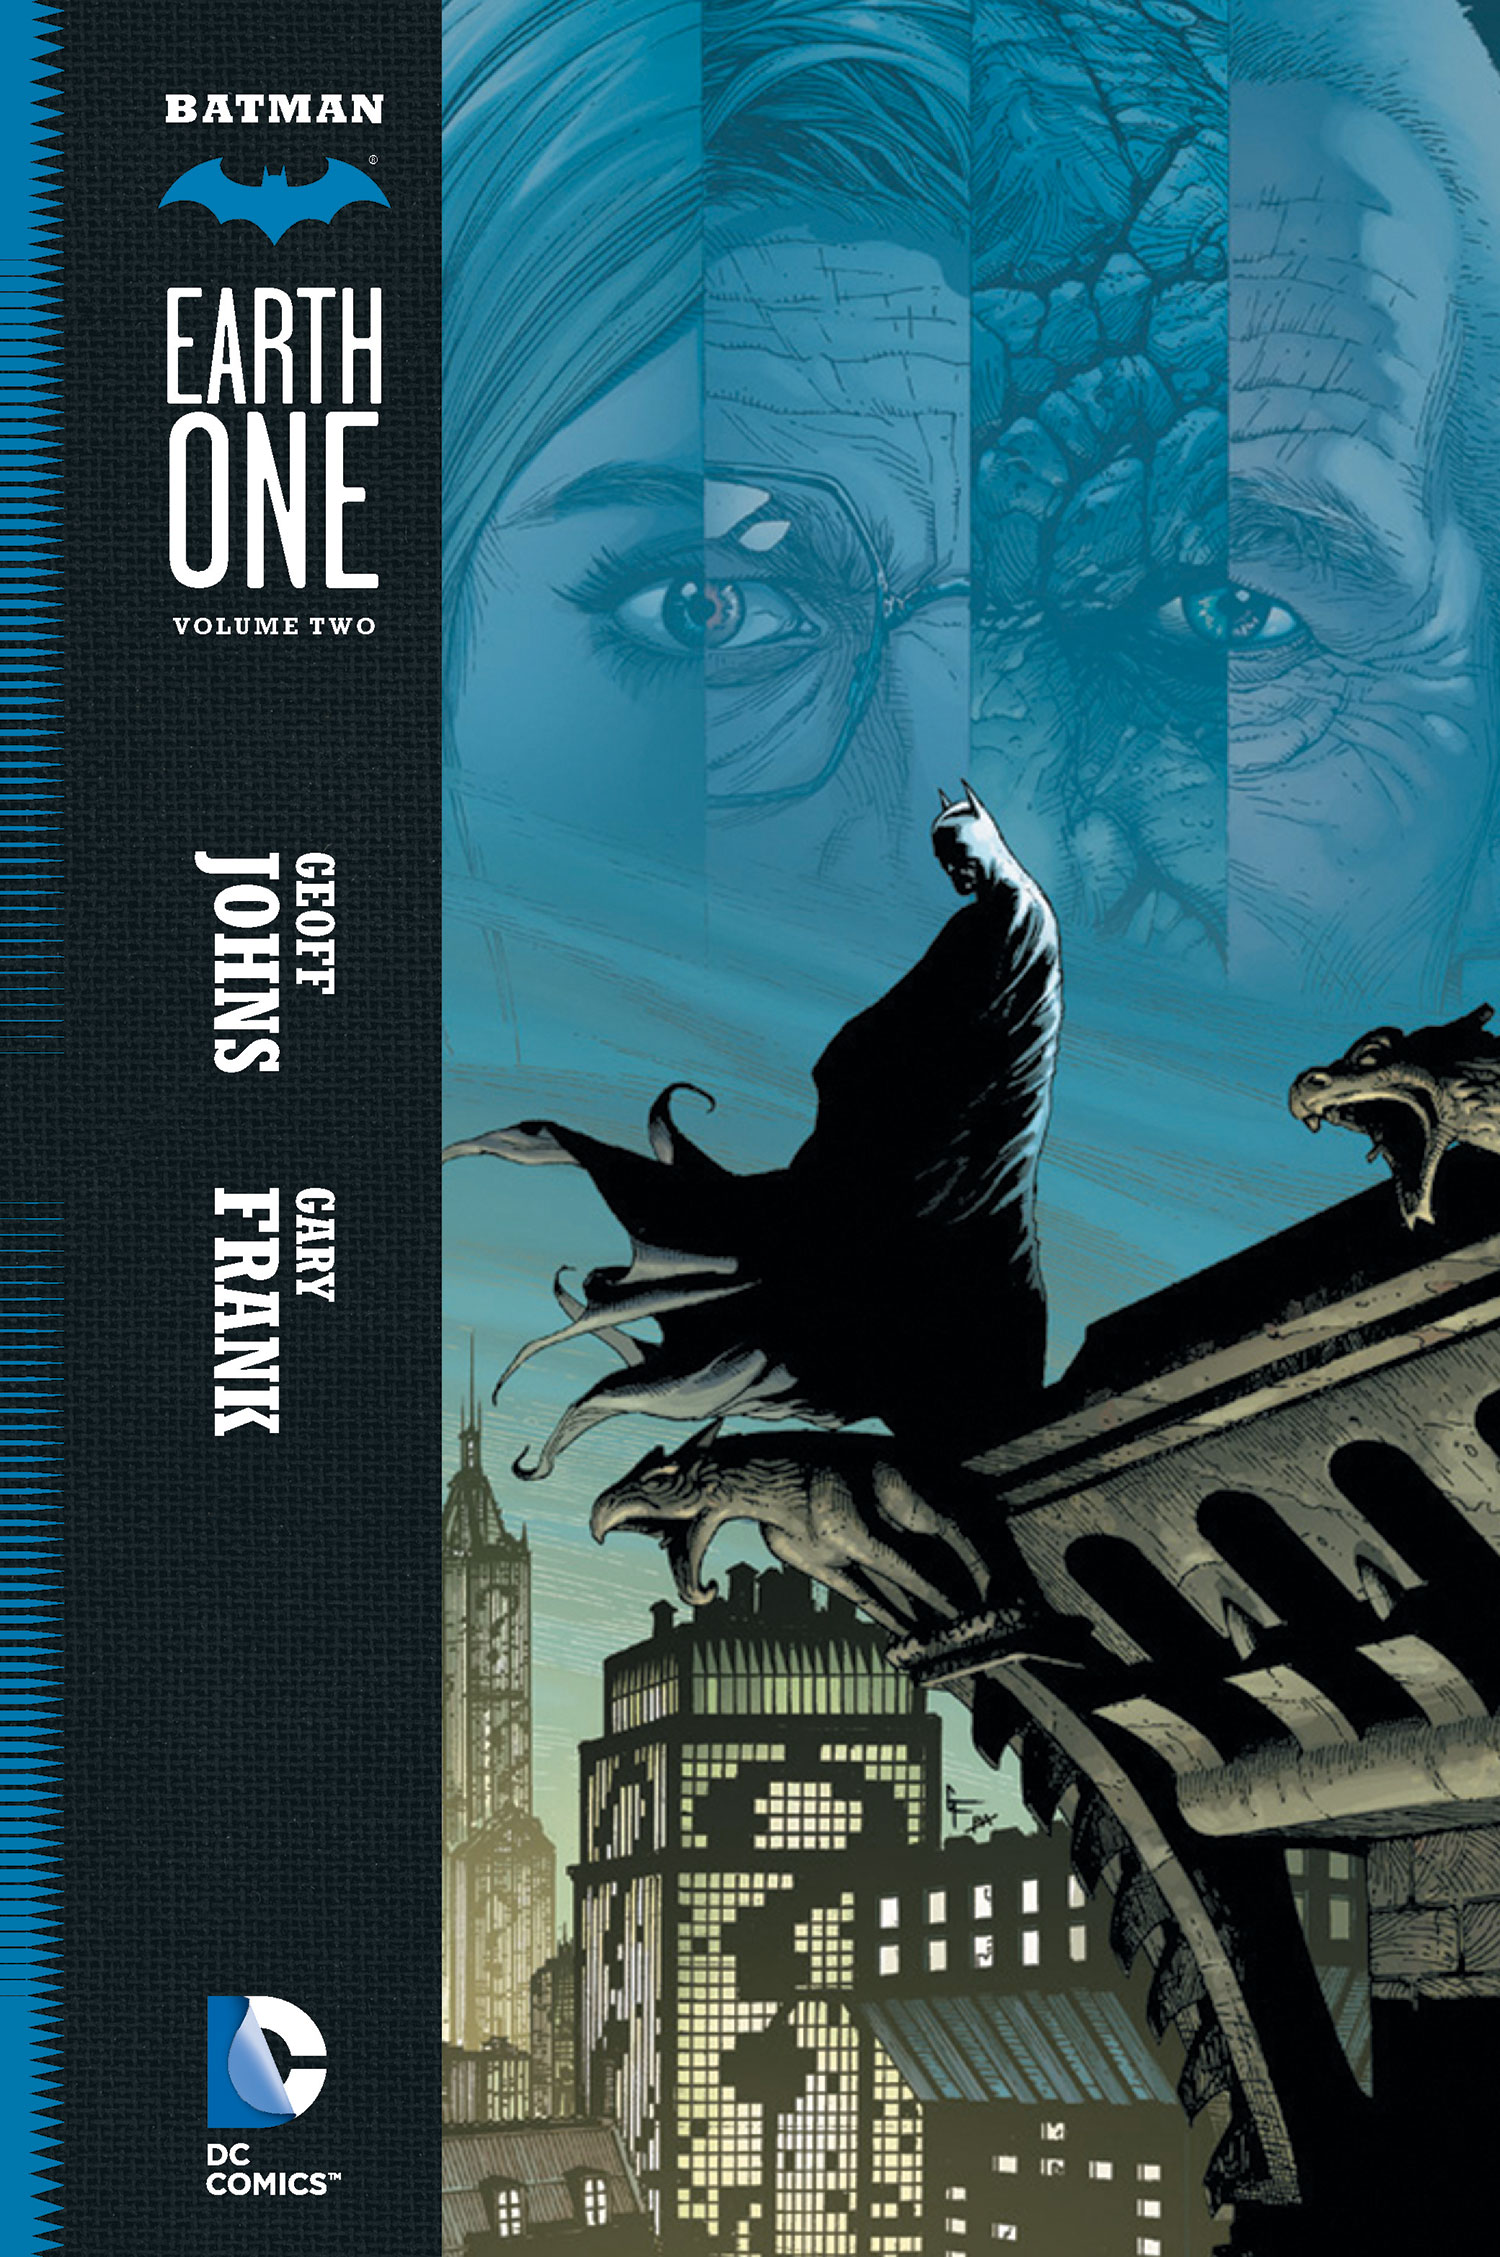 Batman: Earth One Vol 1 2 | DC Database | Fandom